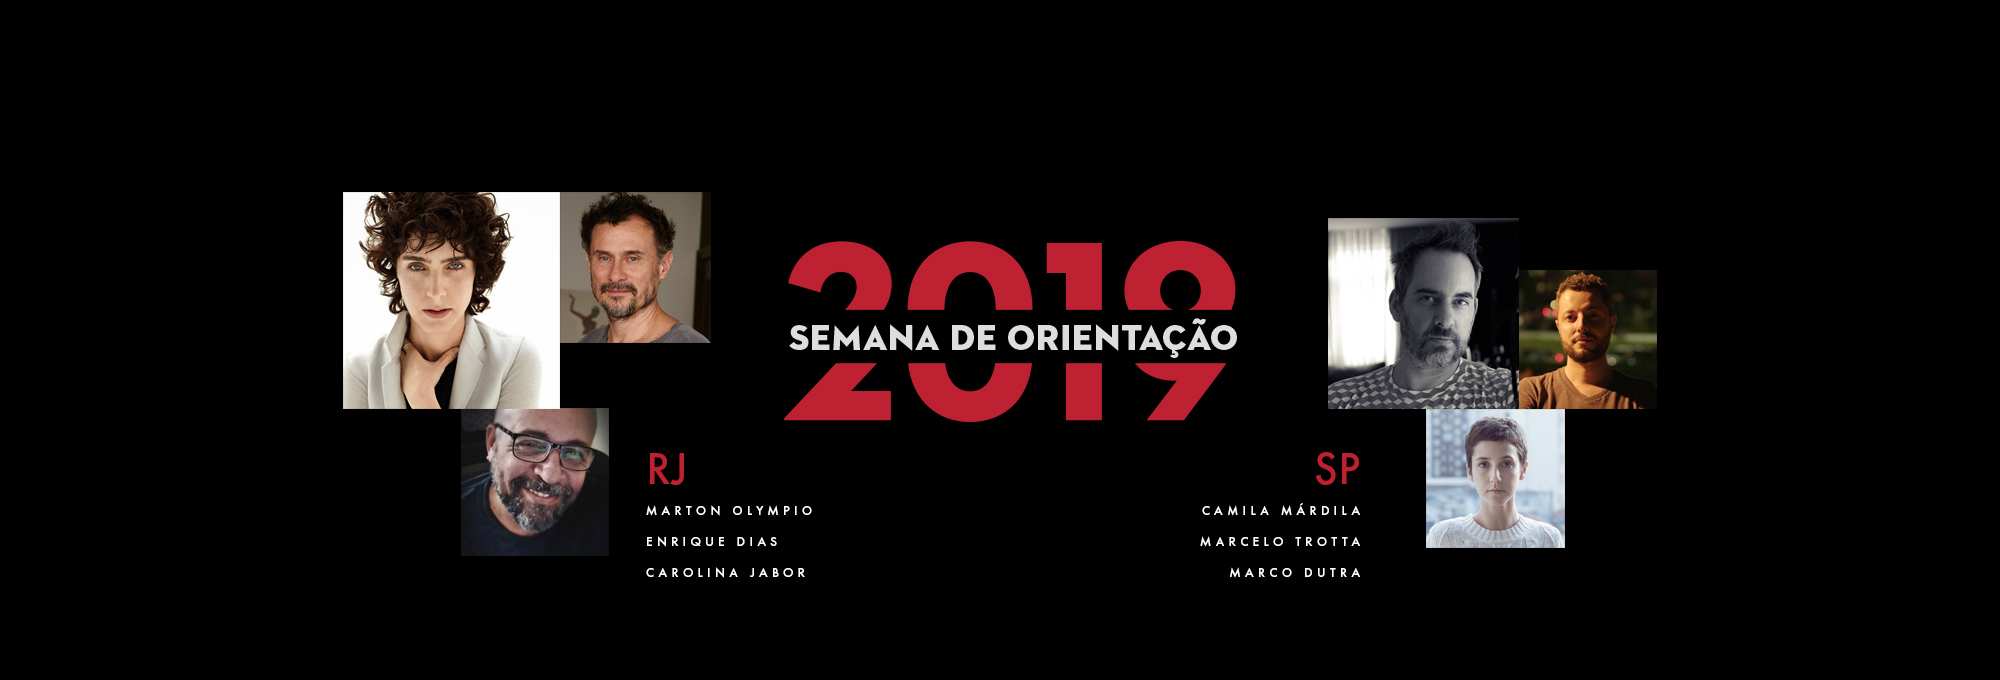 SEMANA DE ORIENTAÇÃO 2019